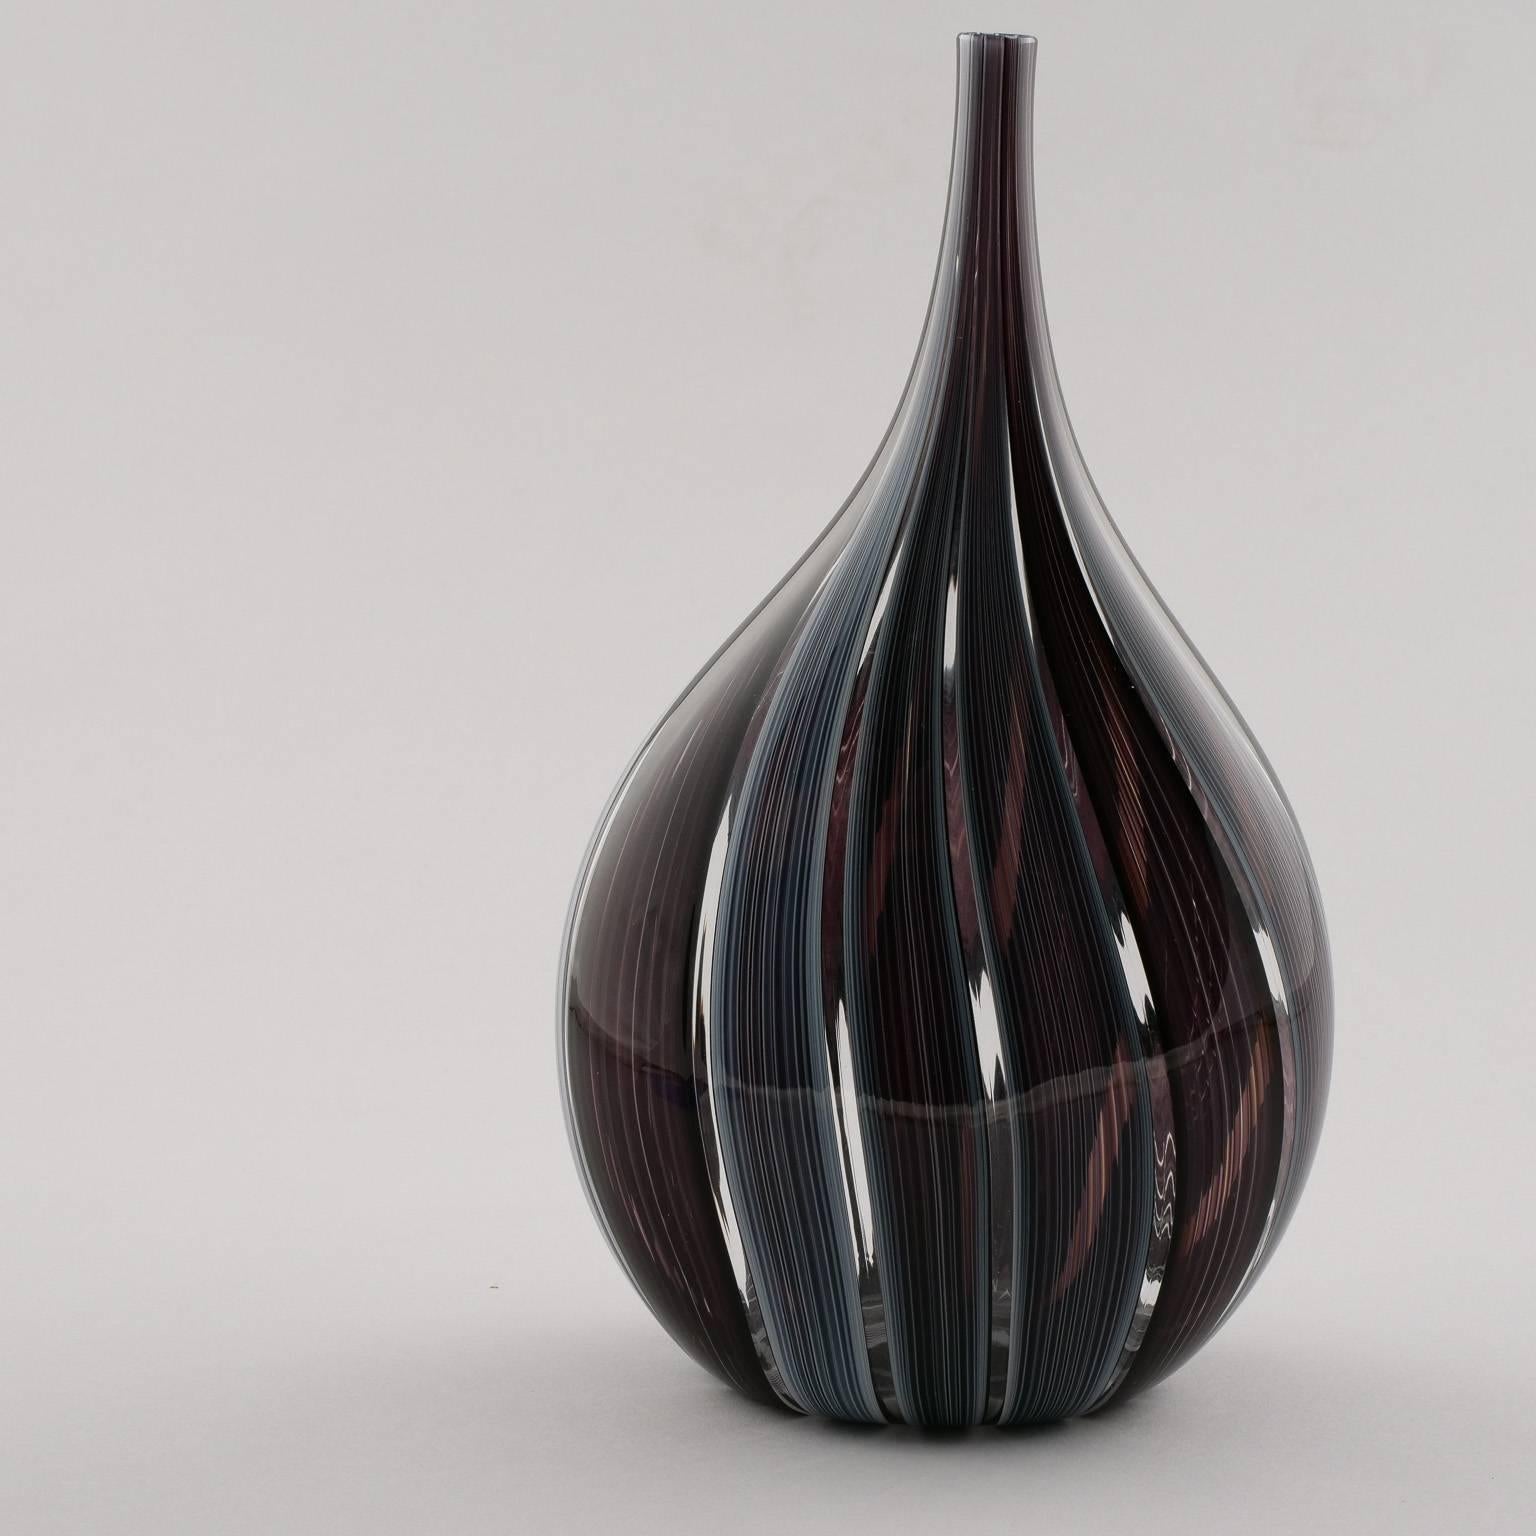 Italian Adriano dalla Valentina Murano Glass Vase with Slender Neck